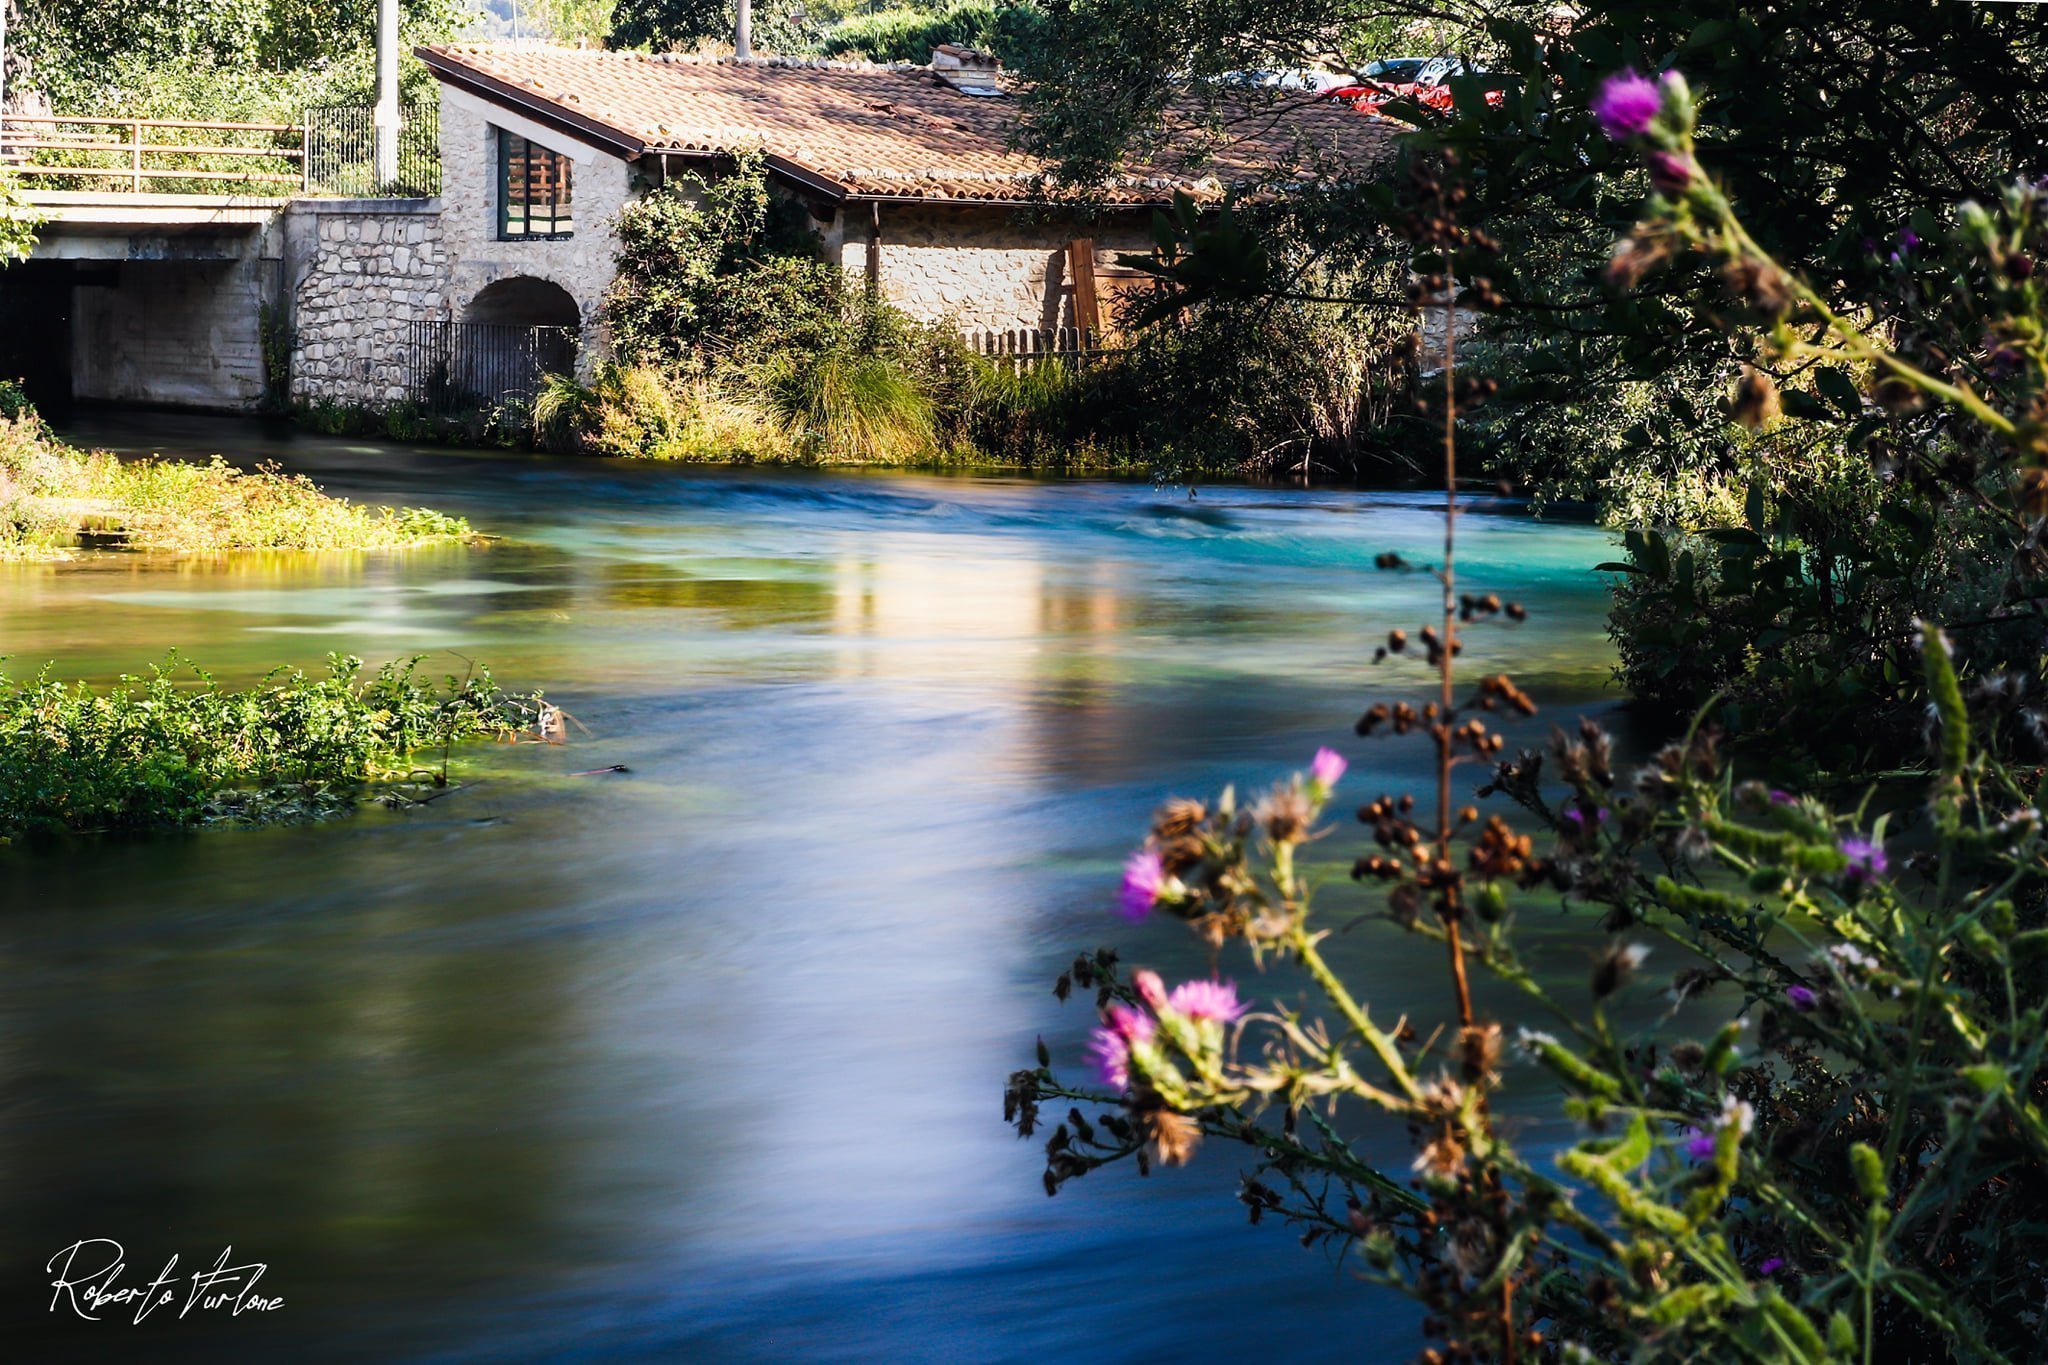 Il fiume Tirino è trai i più belli e limpidi d'Europa dove si respira un'atmosfera incantata